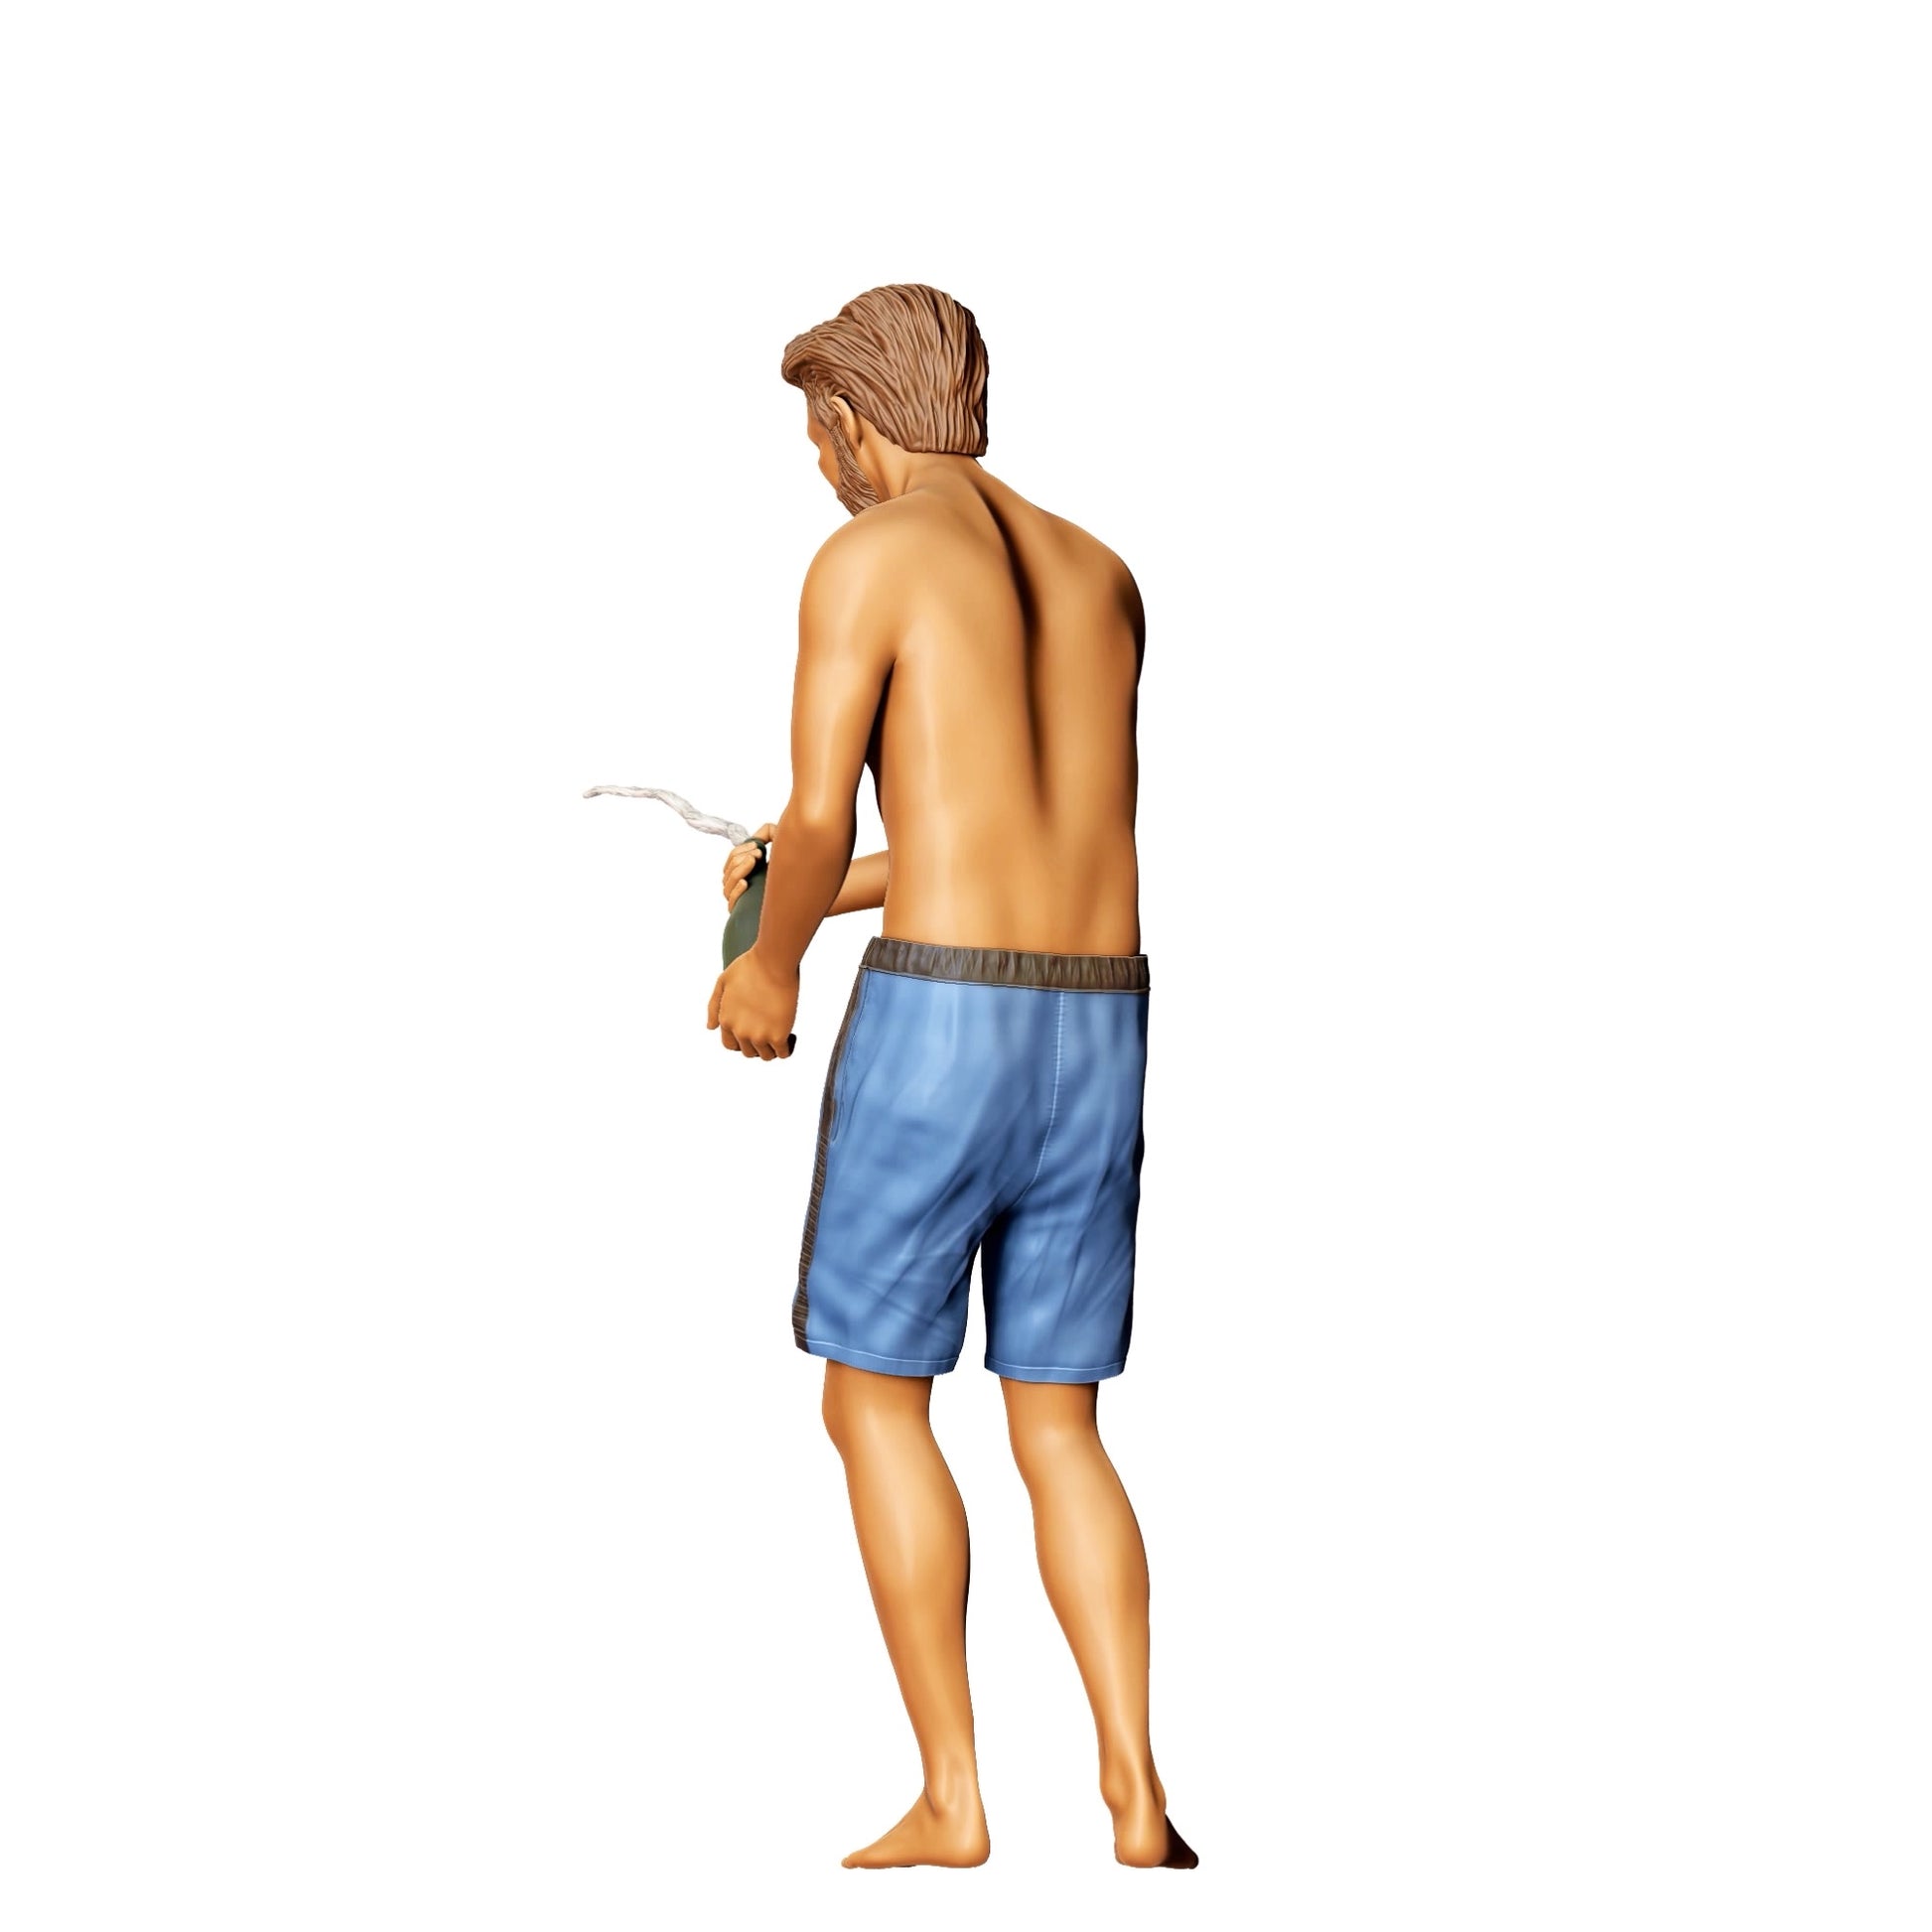 Diorama Modellbau Produktfoto 0: Pool Party Gäste - Mann mit Badehose und Sektflasche (Ref. Nr. 323)